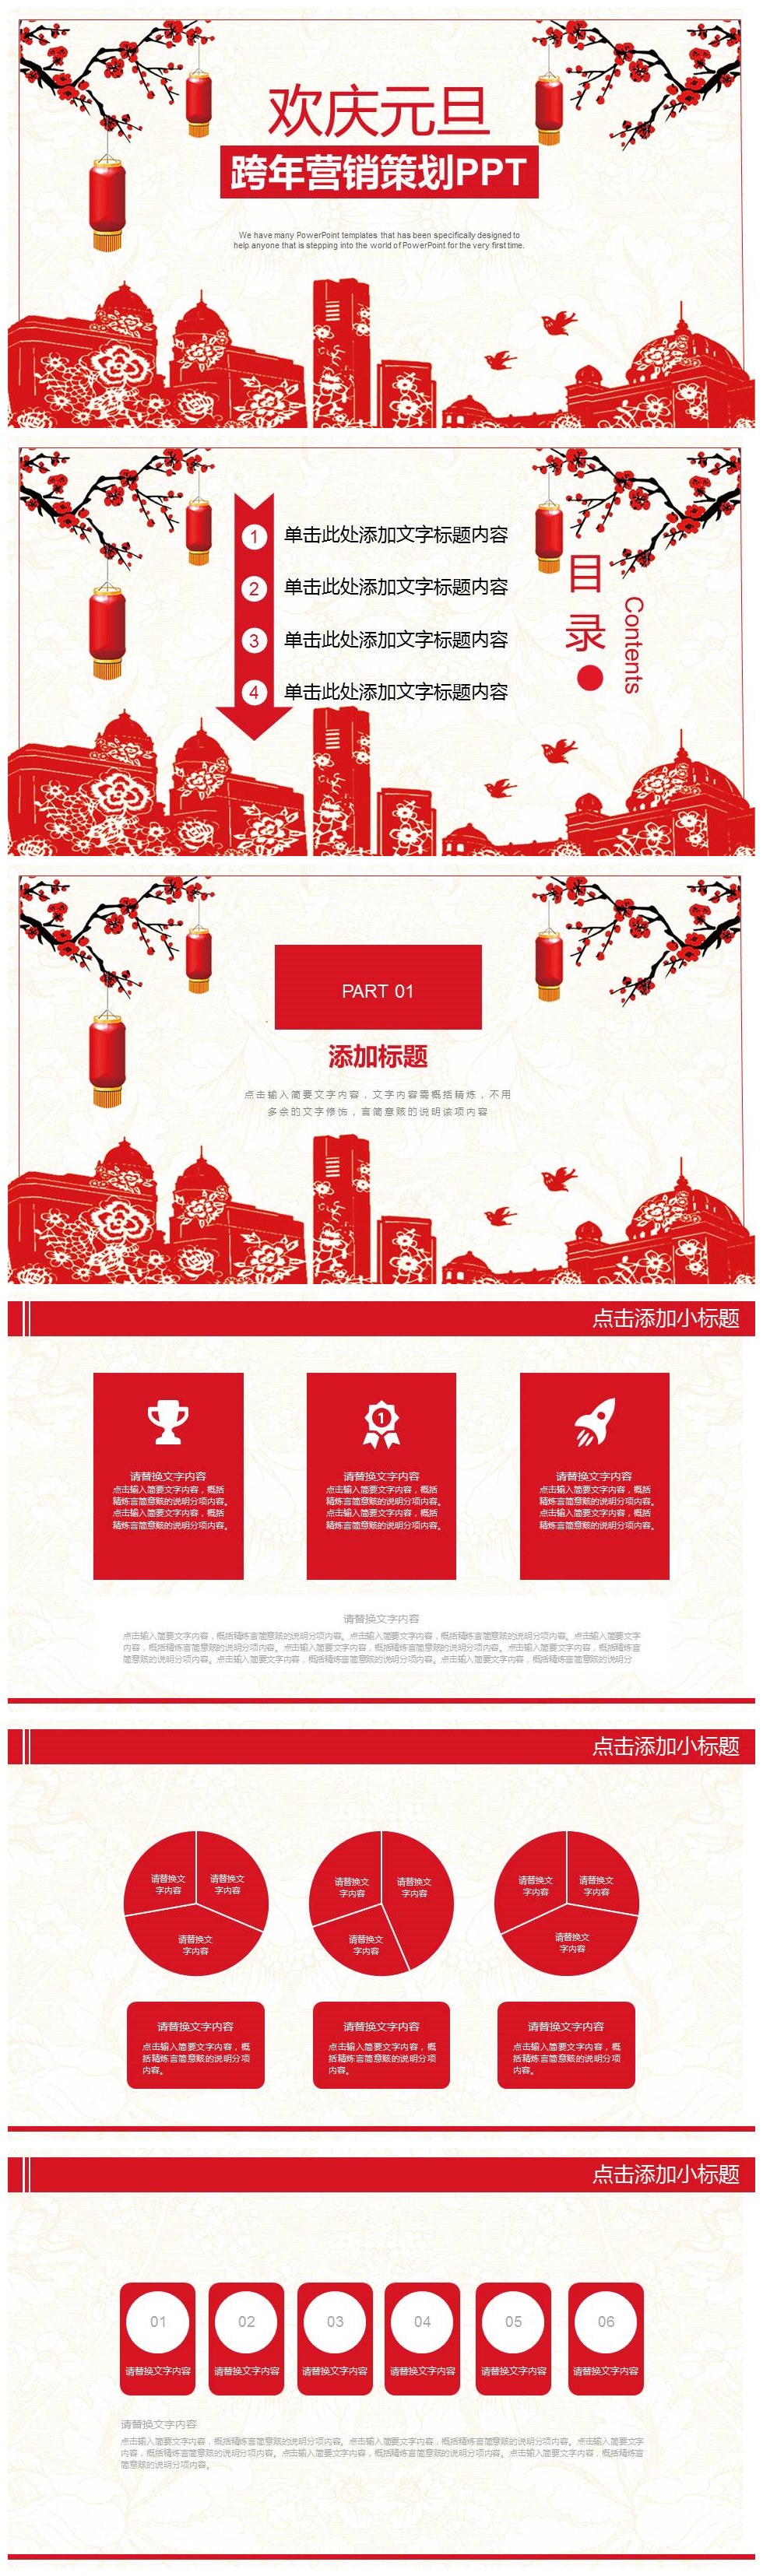 简约中国红跨年营销策划PPT模板-聚给网